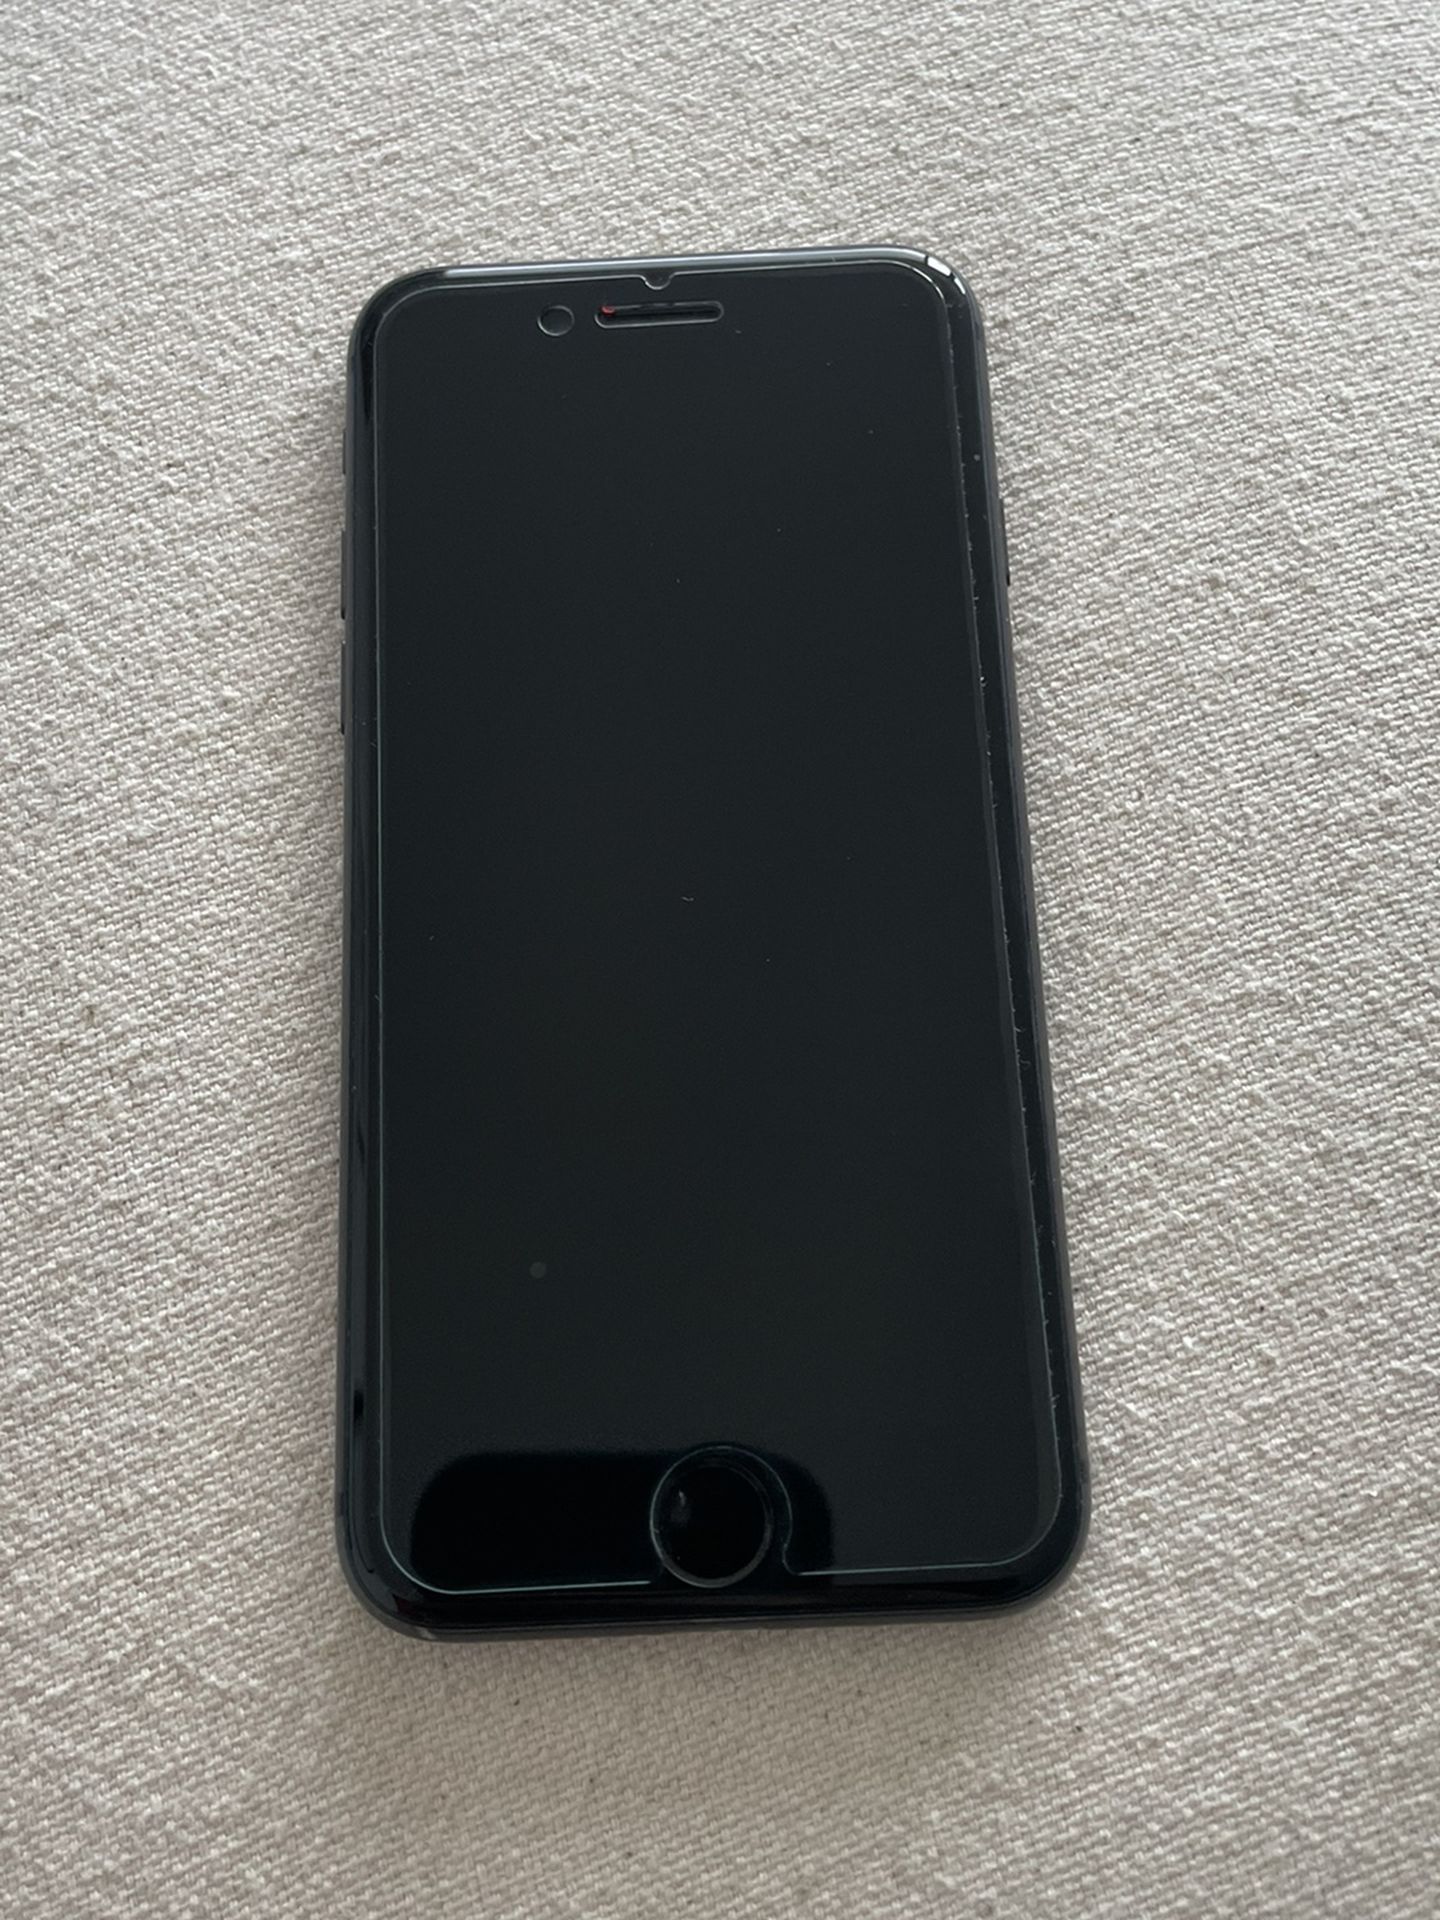 iPhone 8 - 64gb (Unlocked)